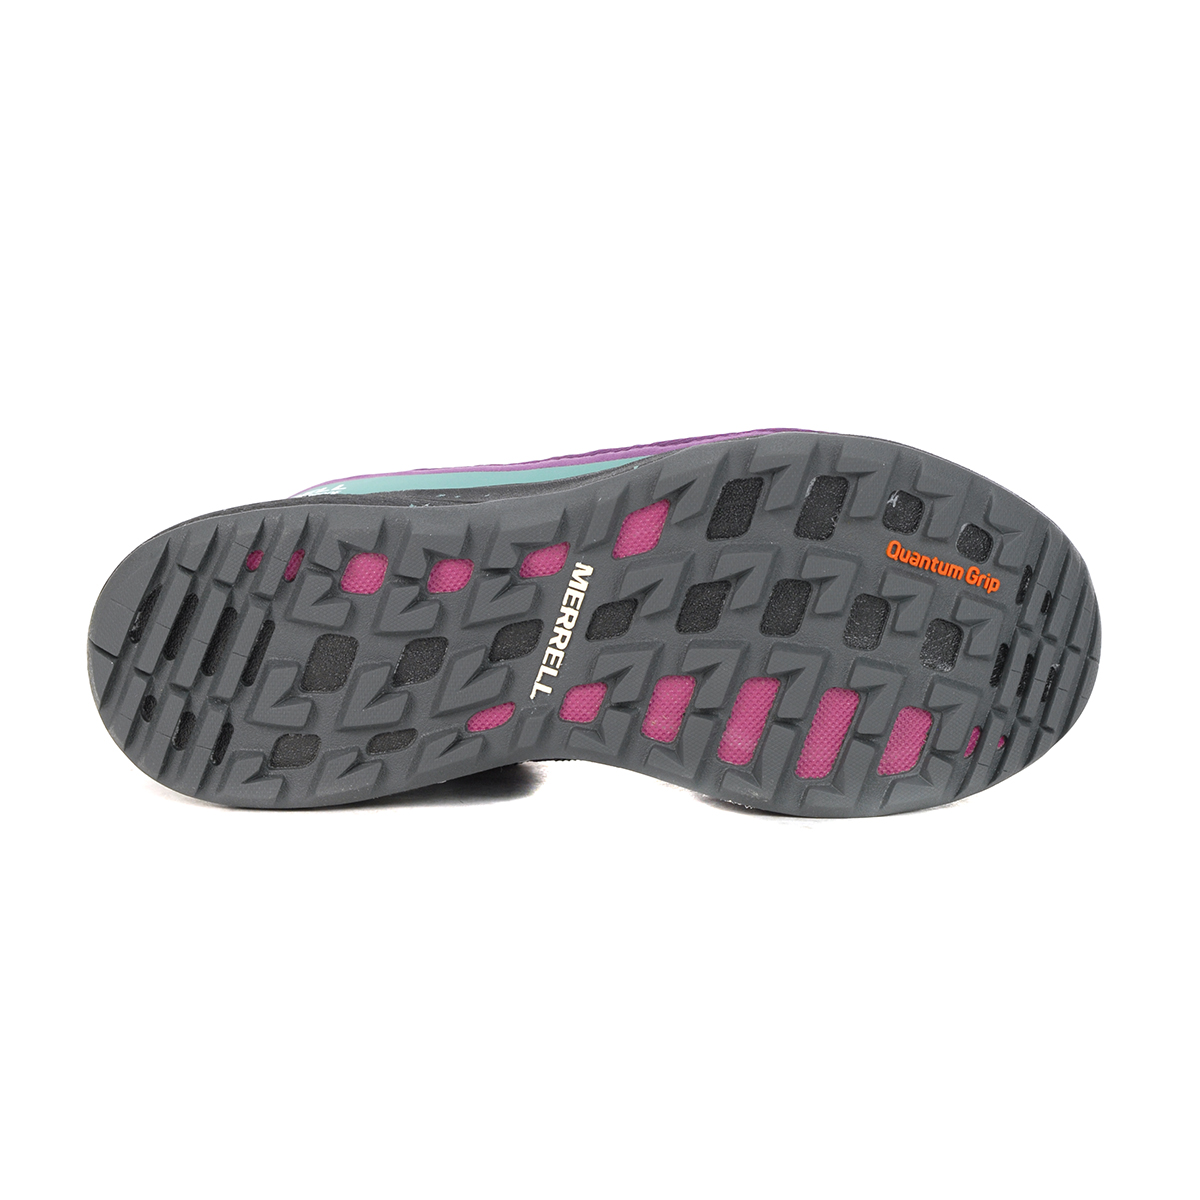 Women's Merrell Bravada 2 Waterproof Hiking Shoes